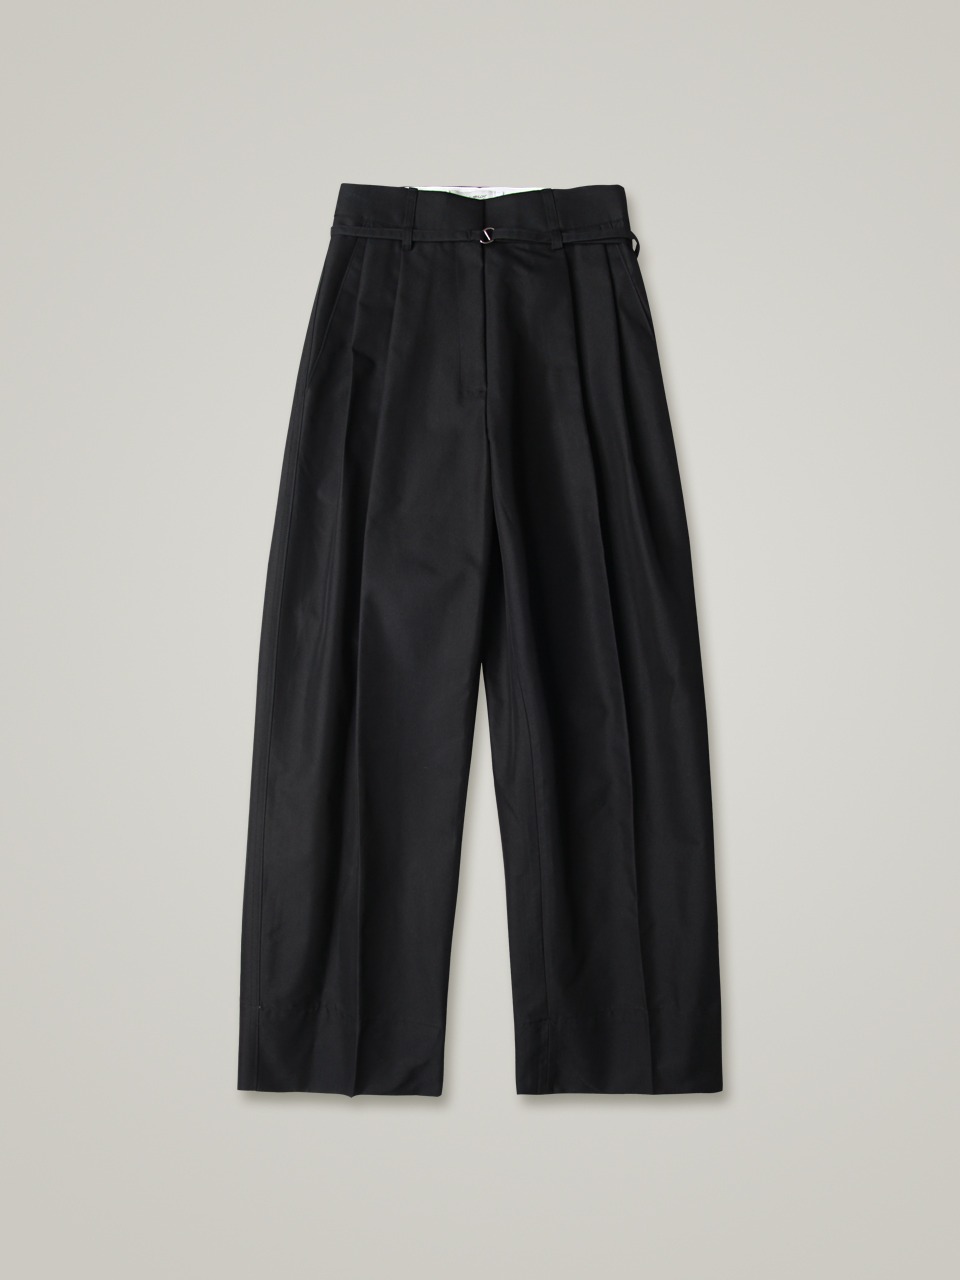 comos 703 cotton pin-tuck wide slacks (black)